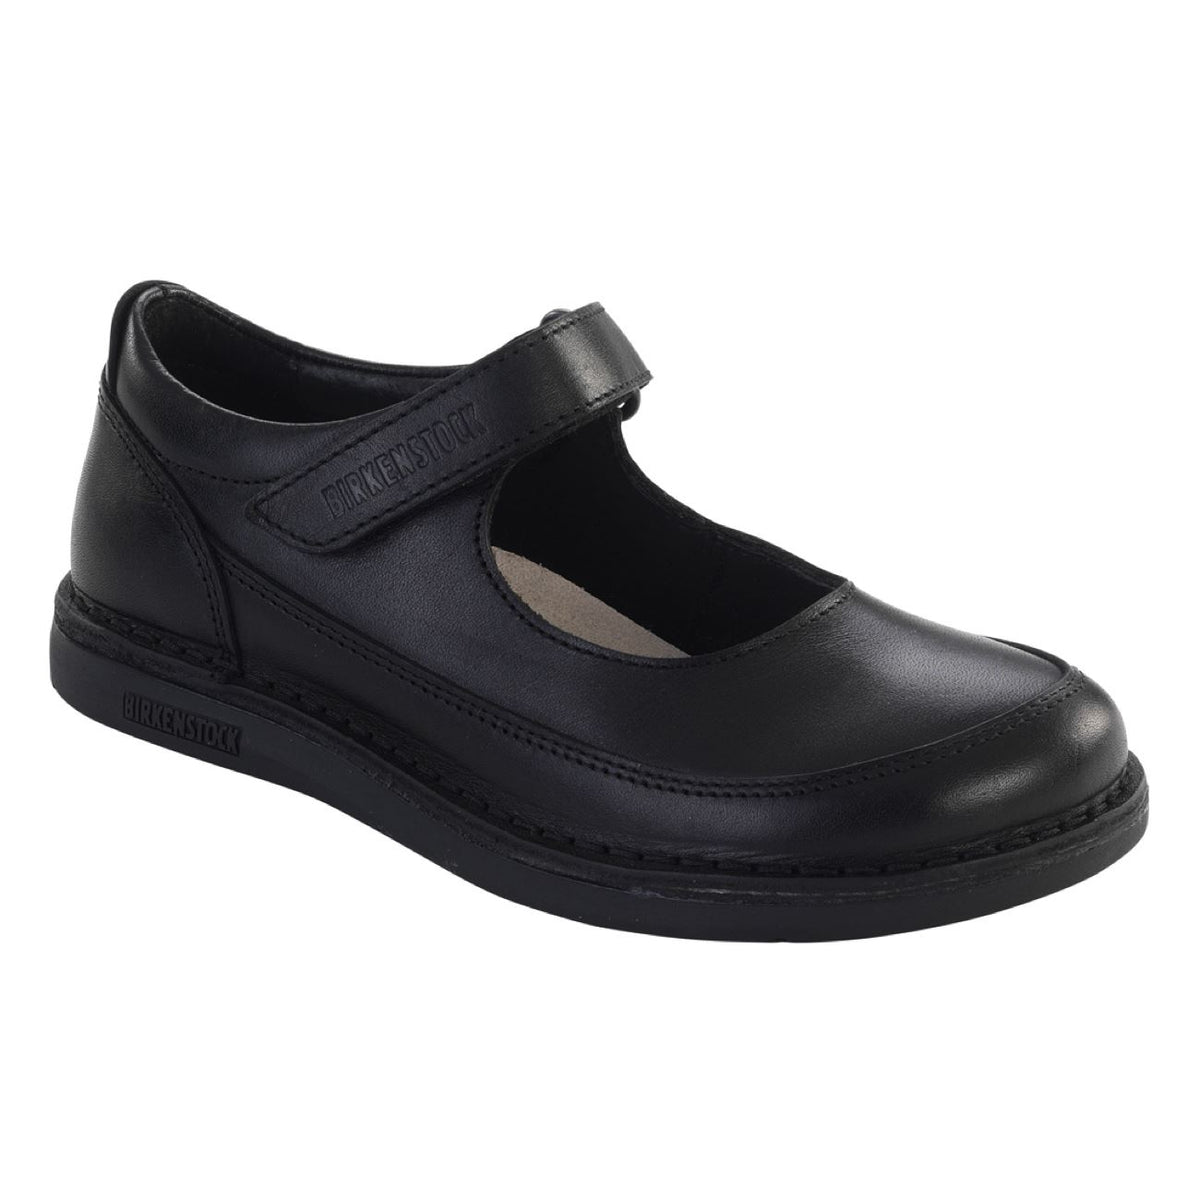 Birkenstock Shoes, June, NL, Regular Fit, Black Shoes Birkenstock Shoes Black 37 